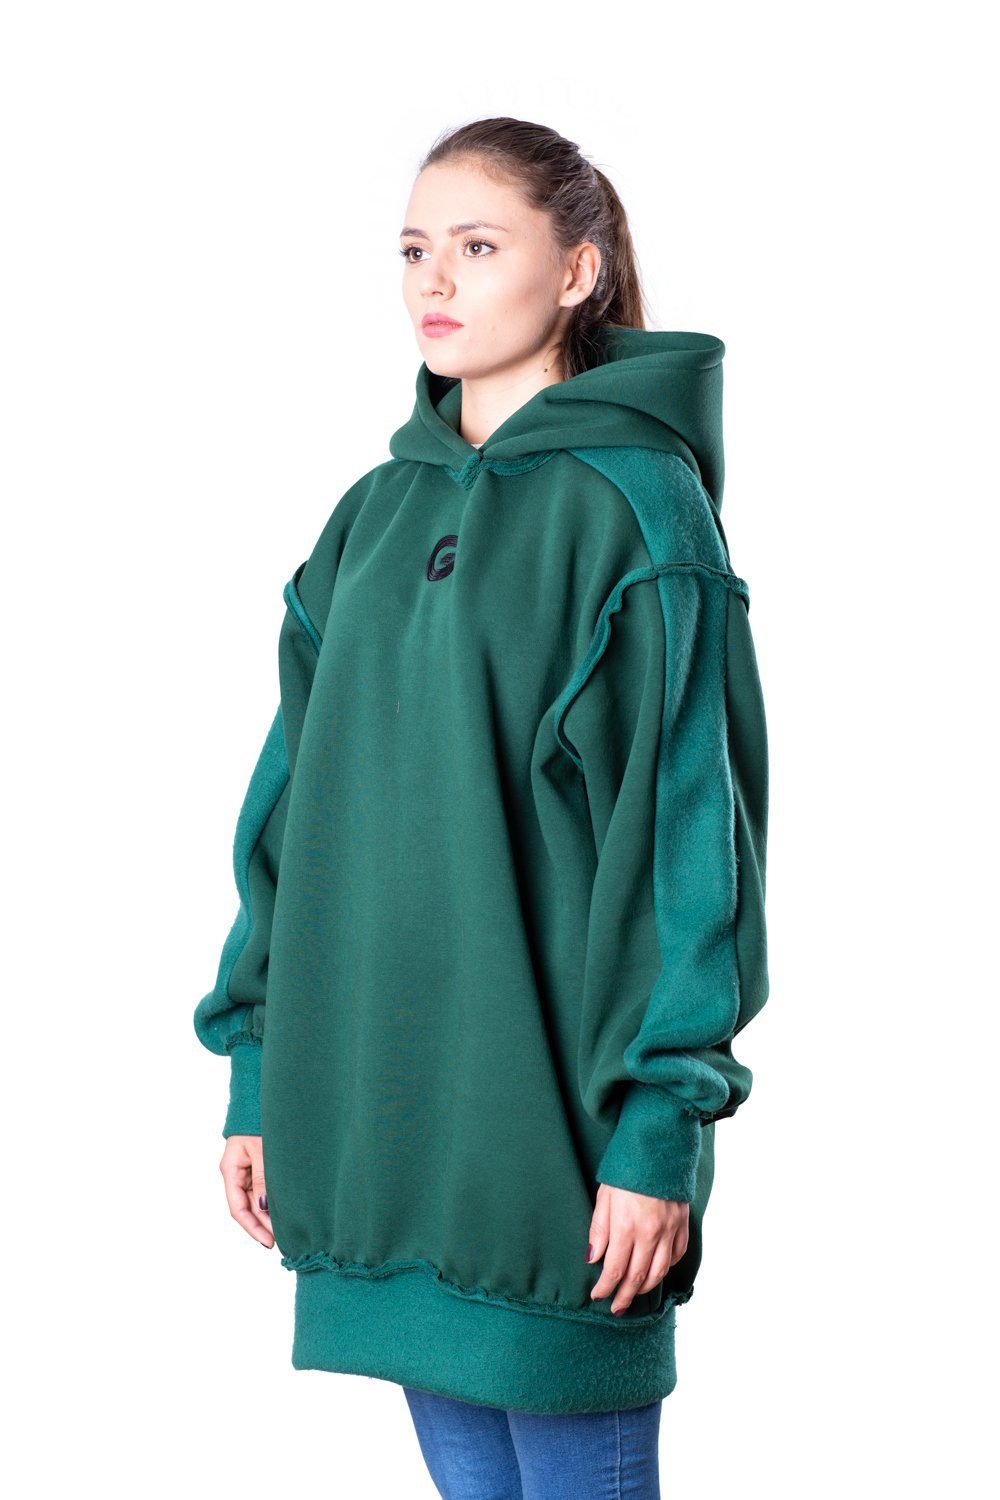 TheG Fresh Oversize Hoody Woman // smaragd